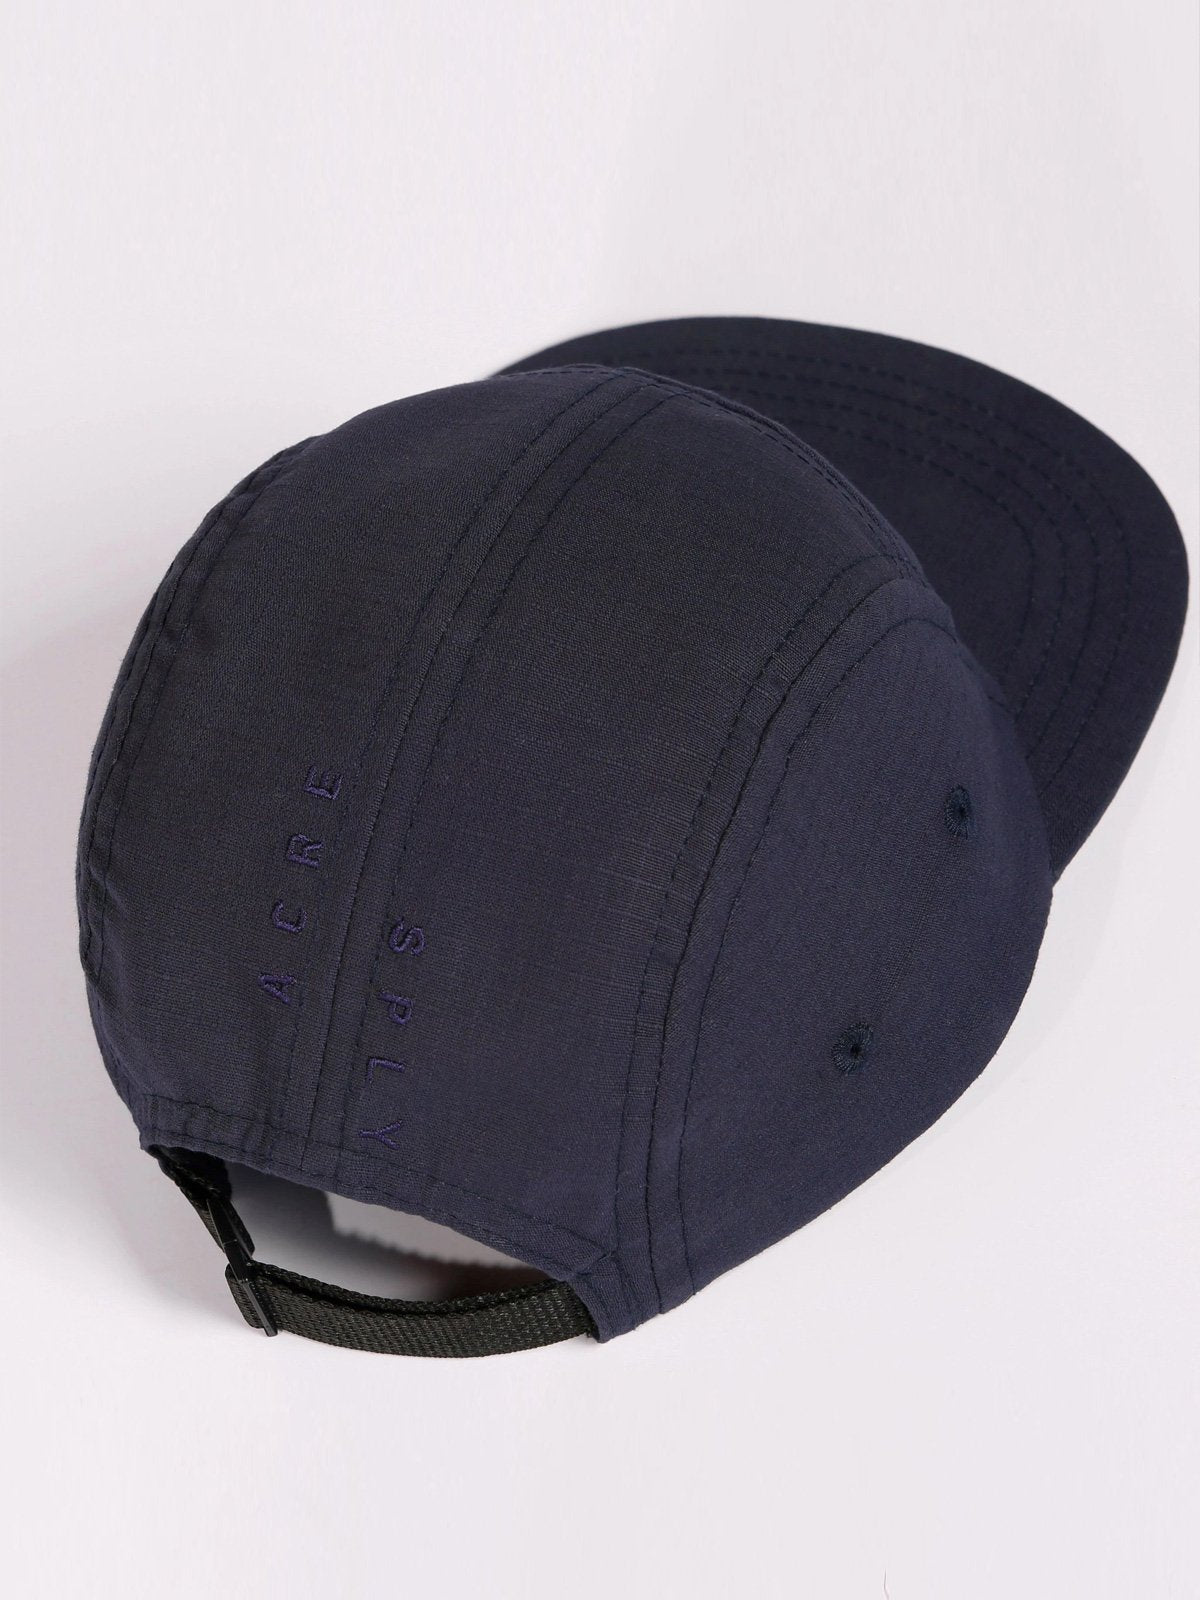 Farik Five Panel Hat by Mission Workshop - Weatherproof Bags & Technical Apparel - San Francisco & Los Angeles - Construit pour durer - Garanti pour toujours